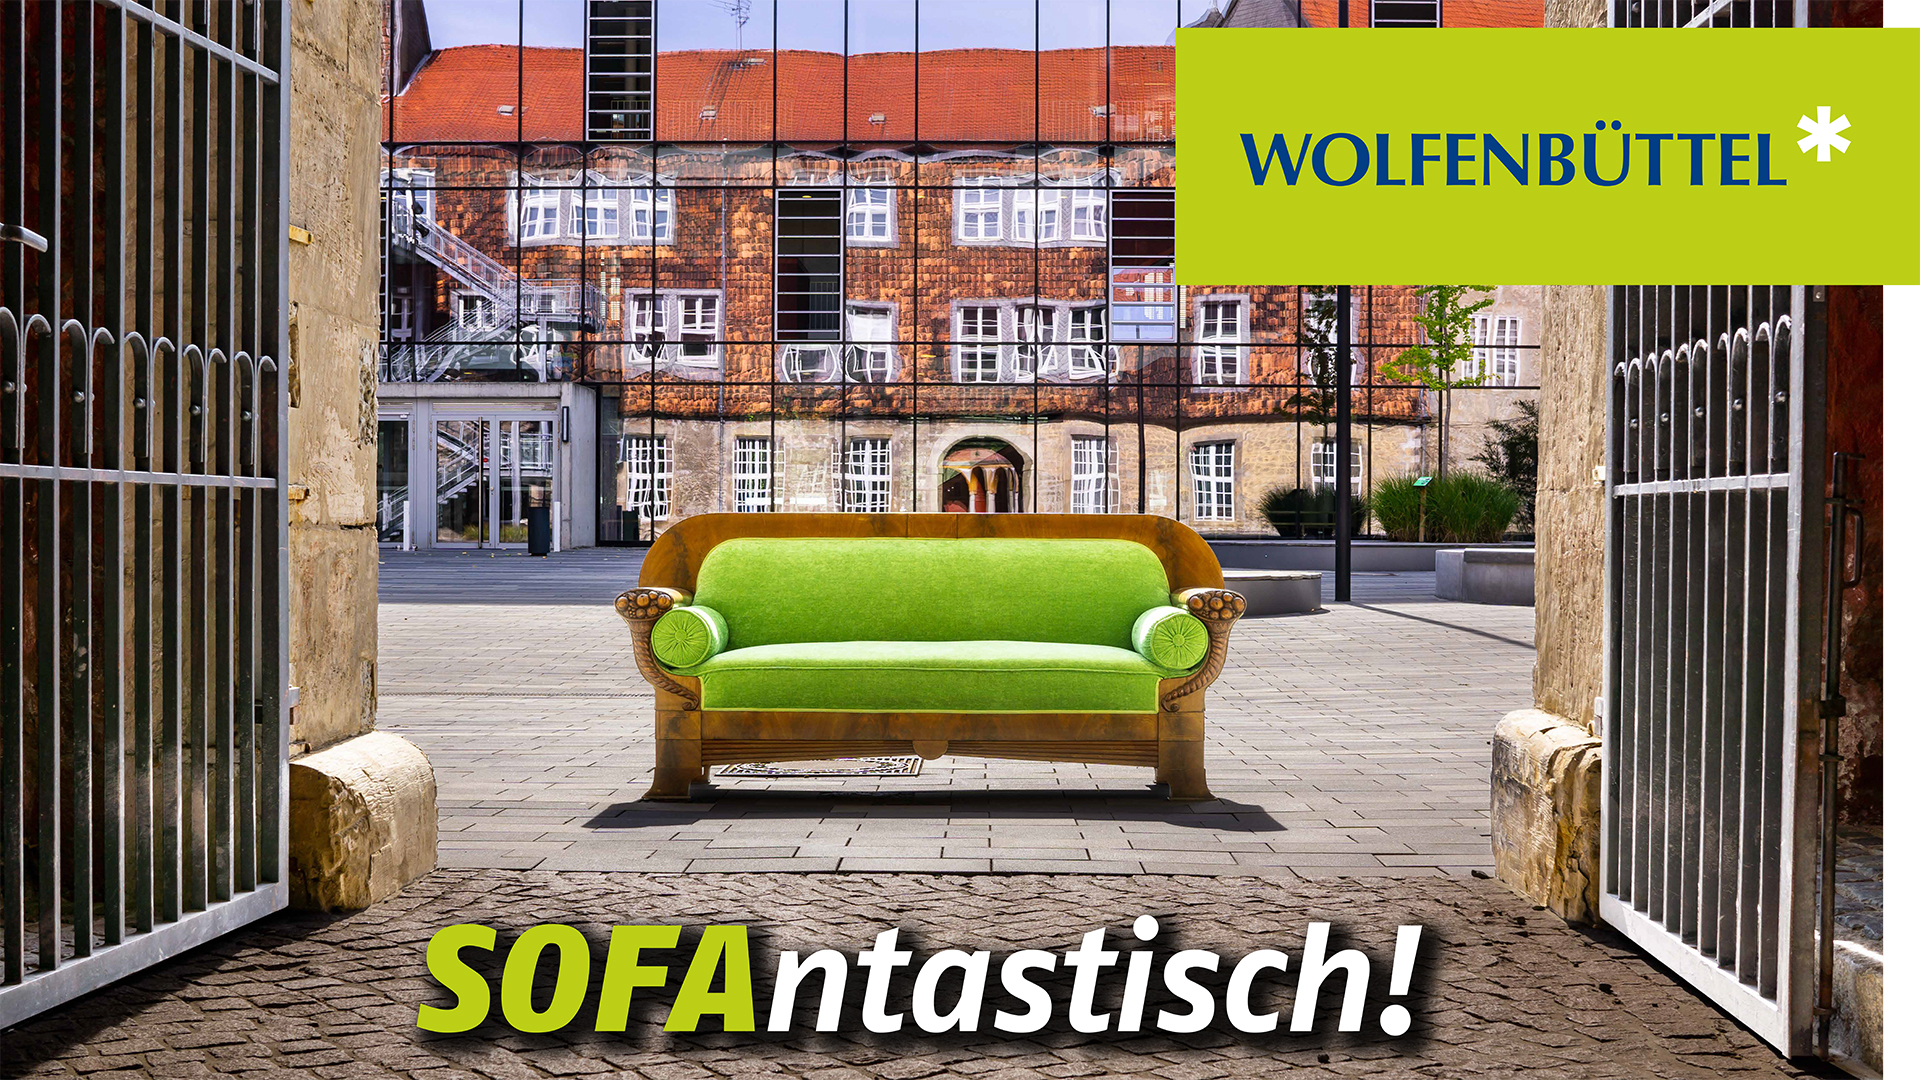 Ein Sofa steht vor einem Gebäude mit spiegelnder Glasfassade. Das Plakatmotiv wird ergänzt durch die Schriftzüge "Wolfenbüttel" und "Sofantastisch!"